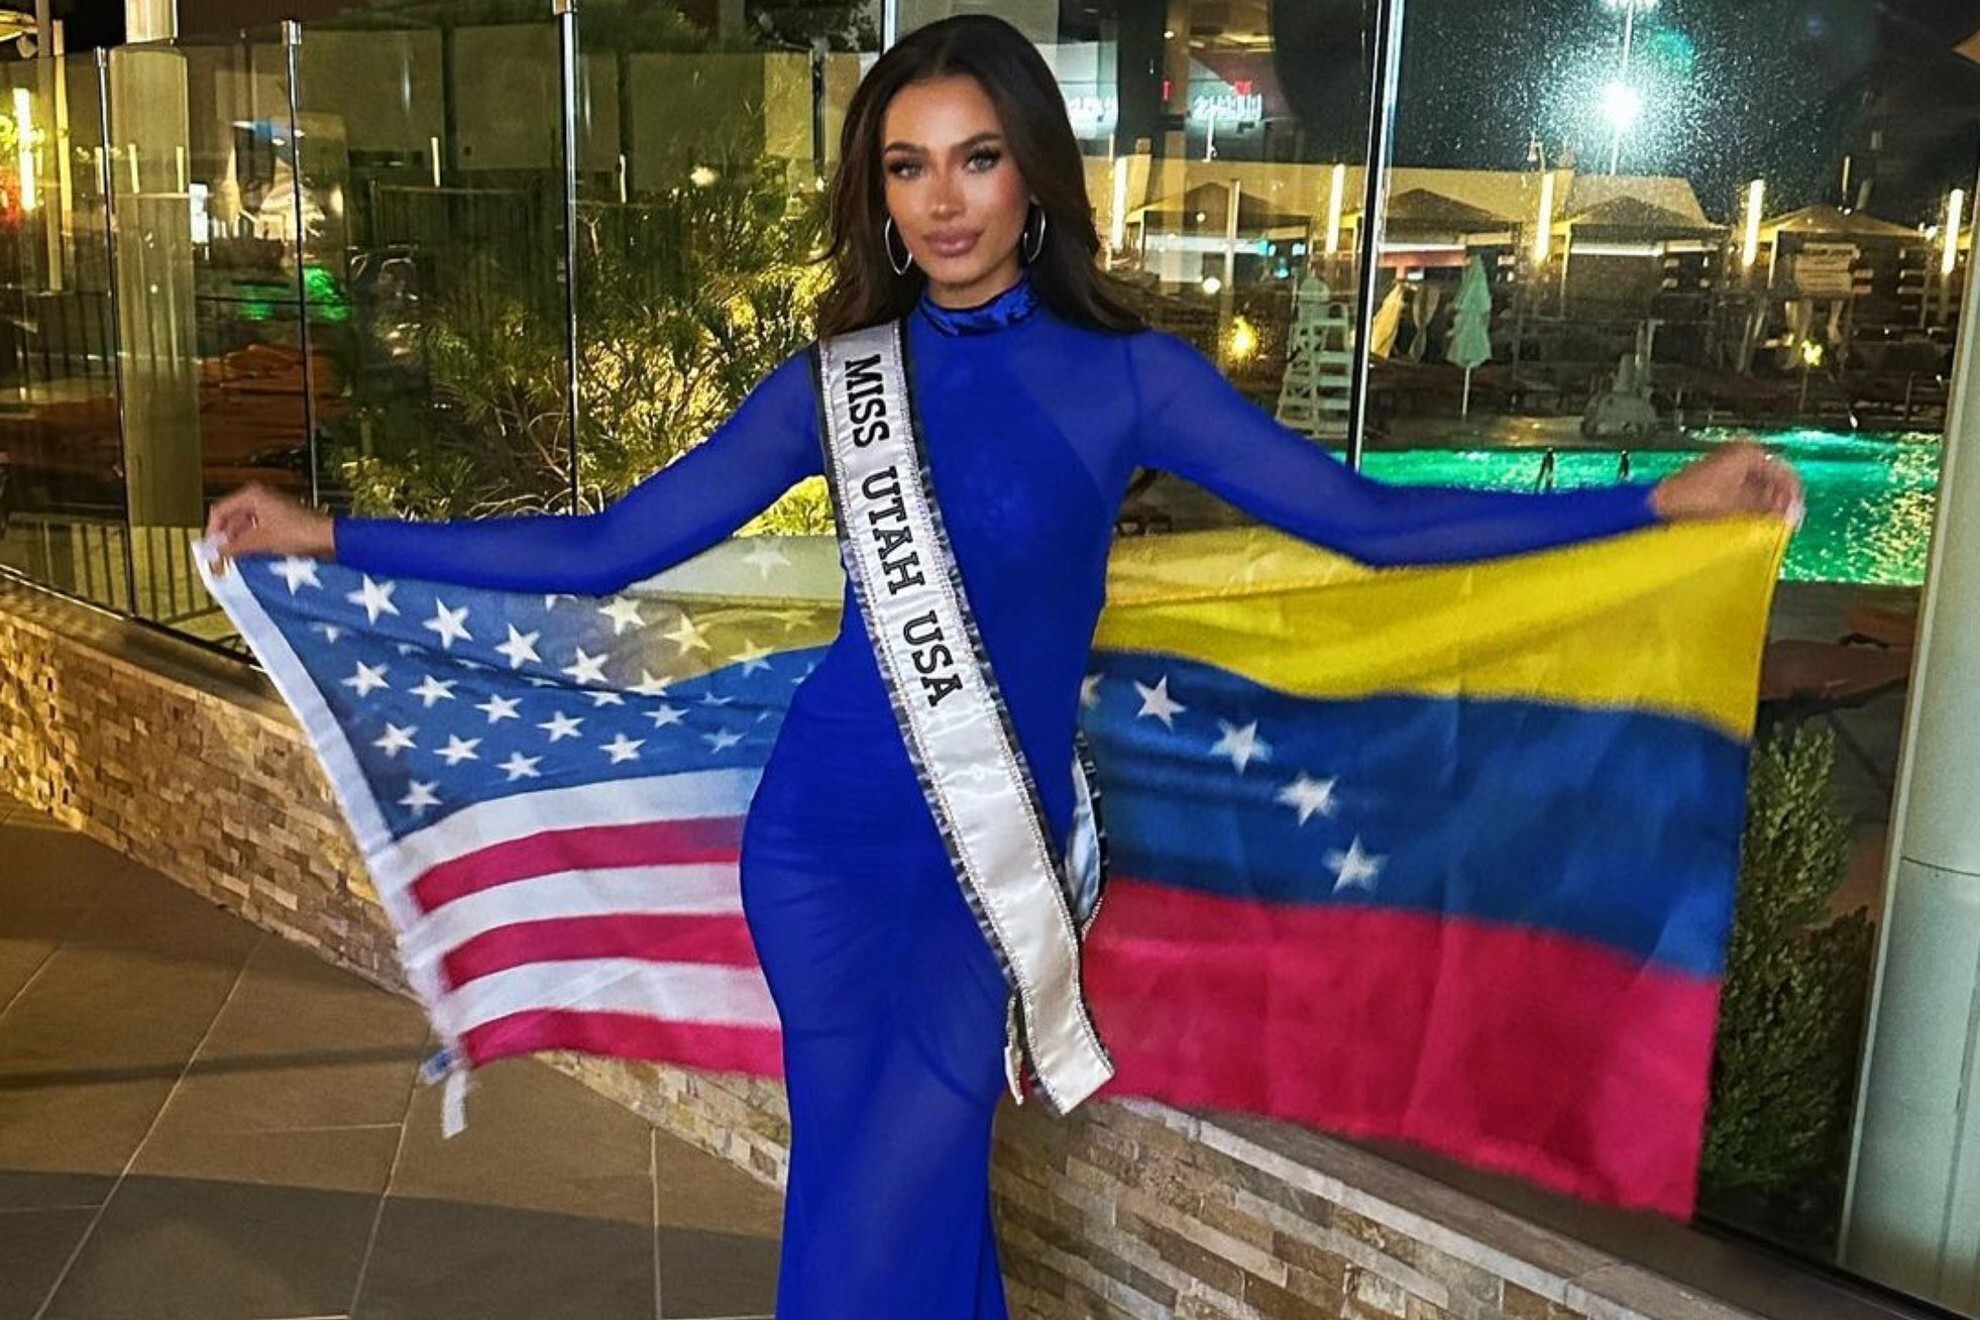 ¿Quién es Noelia Voigt?: La nueva Miss USA 2023 de origen venezolano que está rompiendo barreras